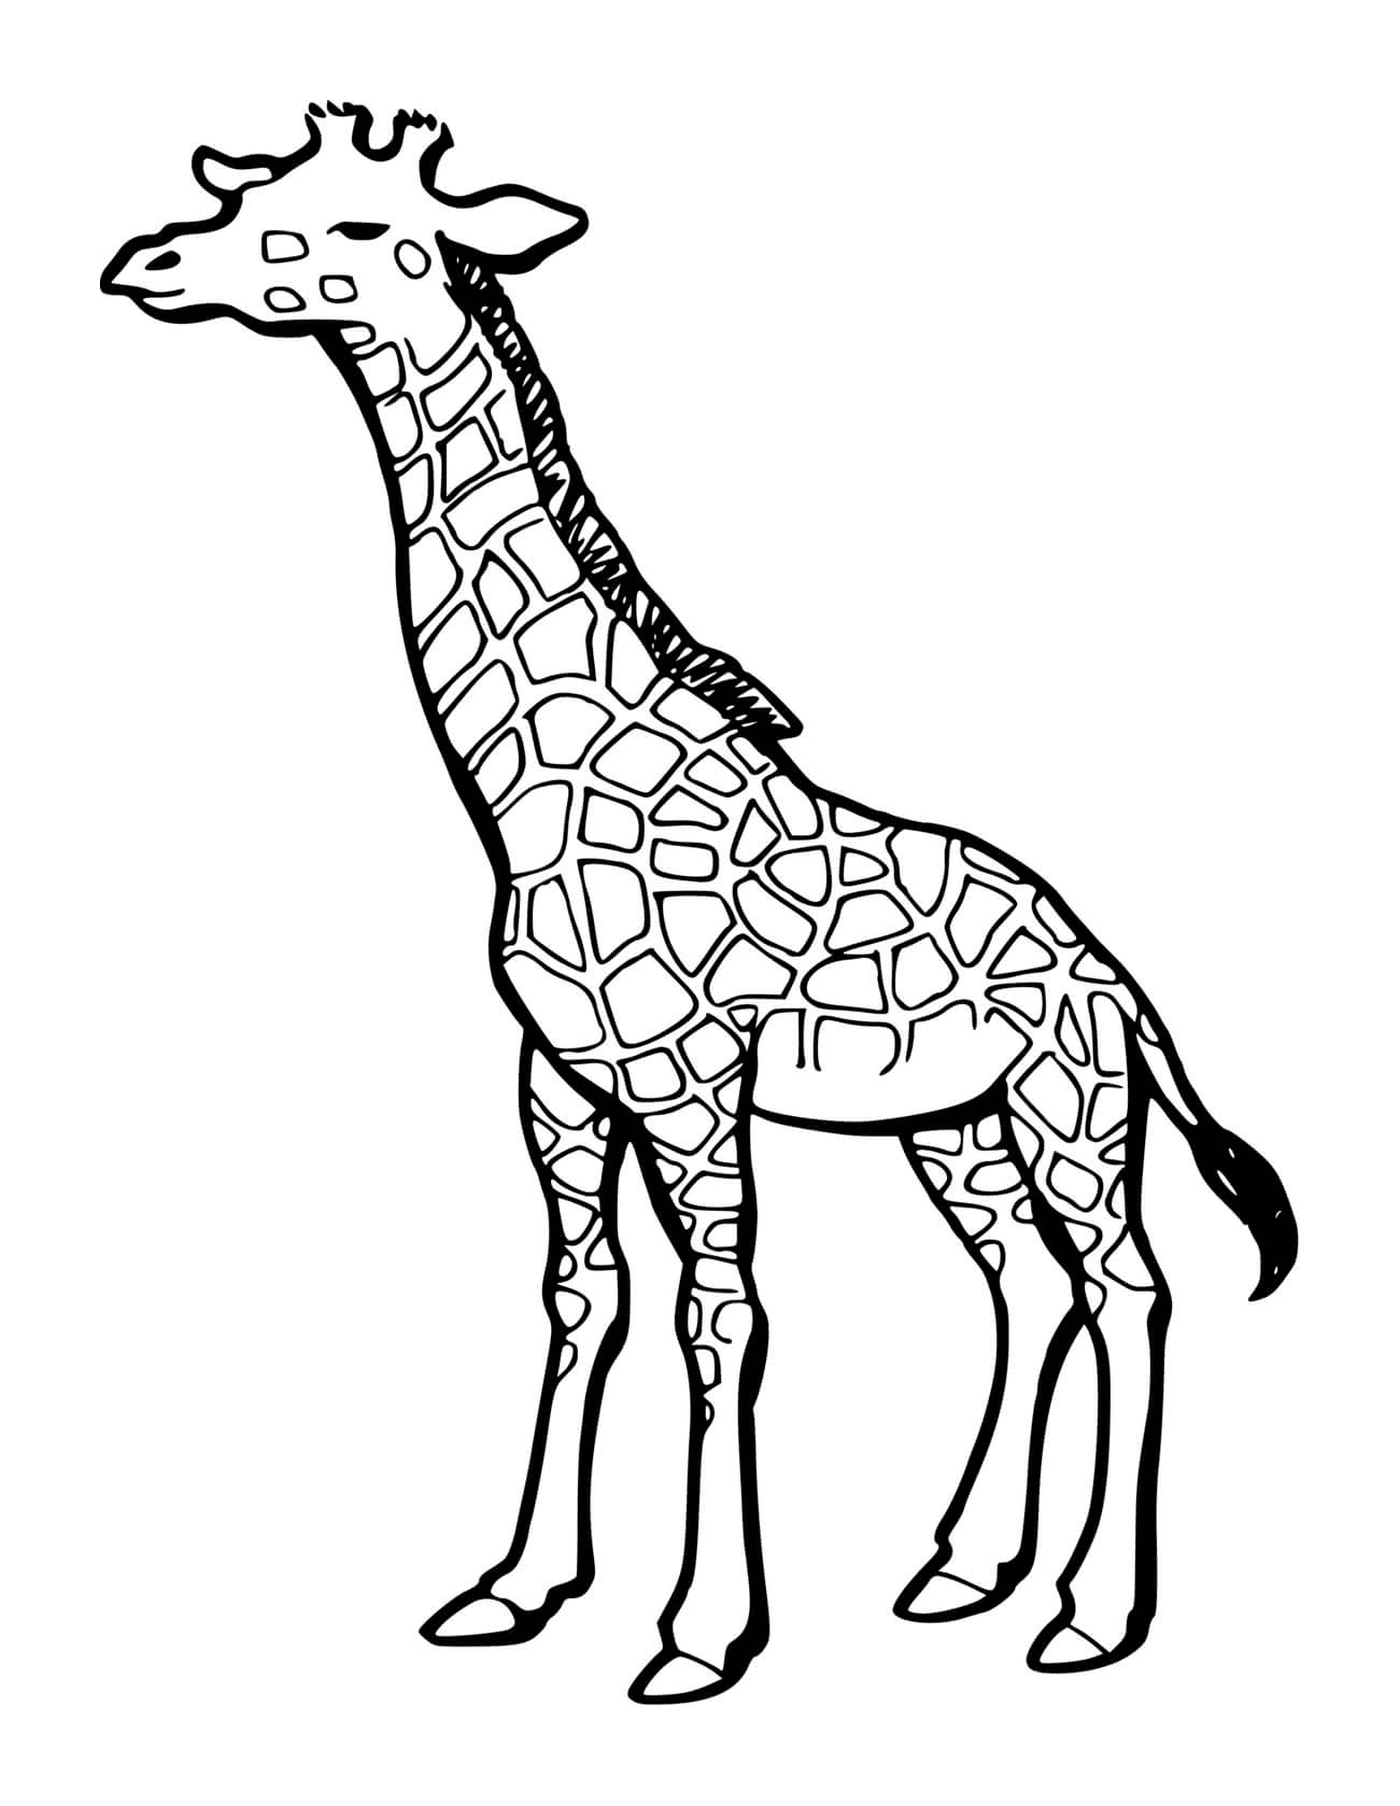  Часть тела жирафа 